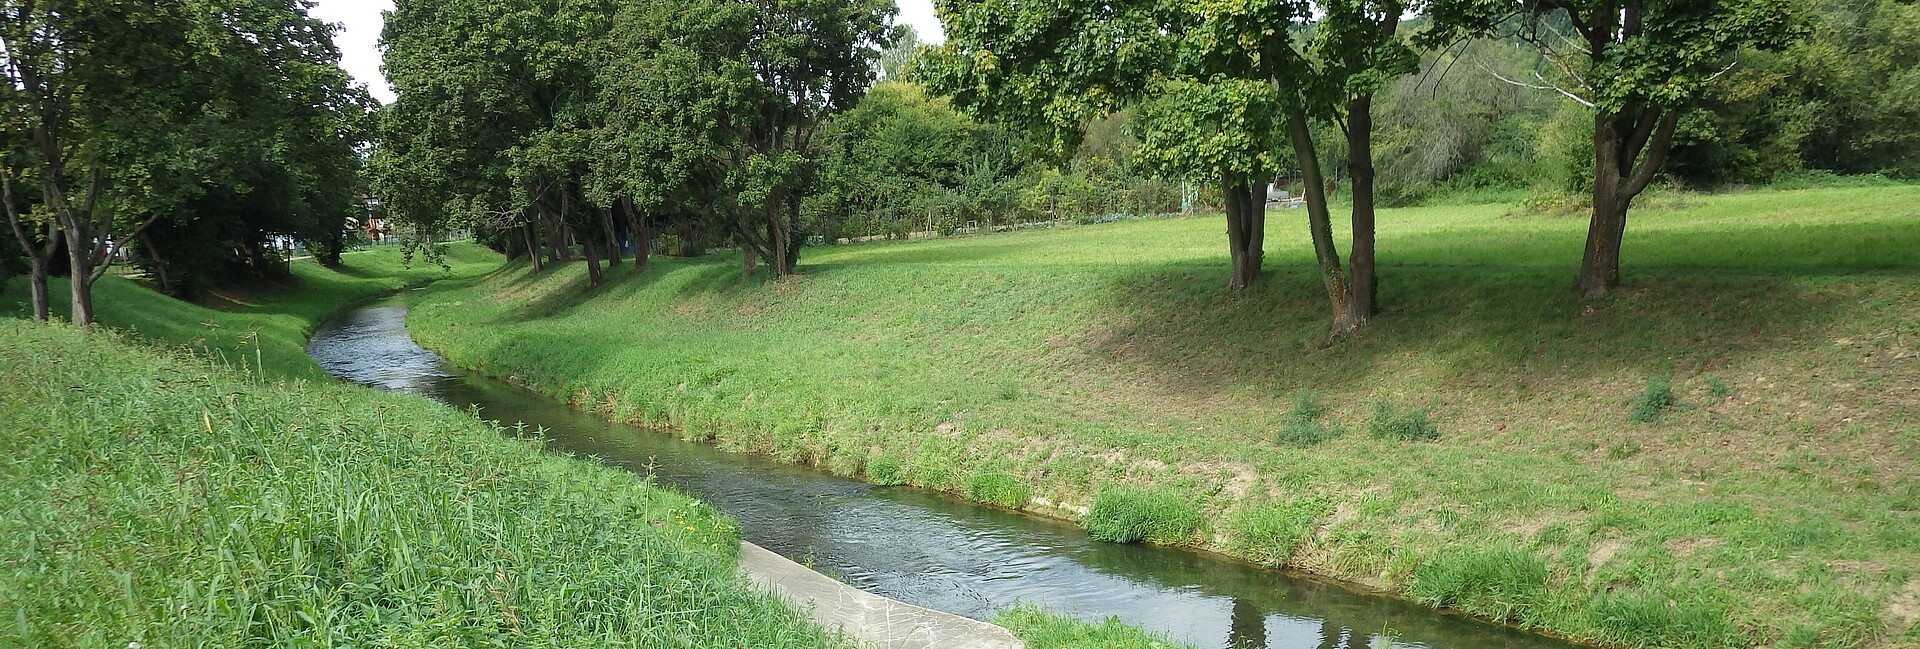 Die Pfinz in Berghausen. Das Gewässerbett der Pfinz ist von grasbewachsenen Böschungen begrenzt. Auf den Böschungen stehen abschnittsweise Bäume. Die Pfinz fließt gleichmäßig in ihrem immer gleich breiten Gewässerbett.